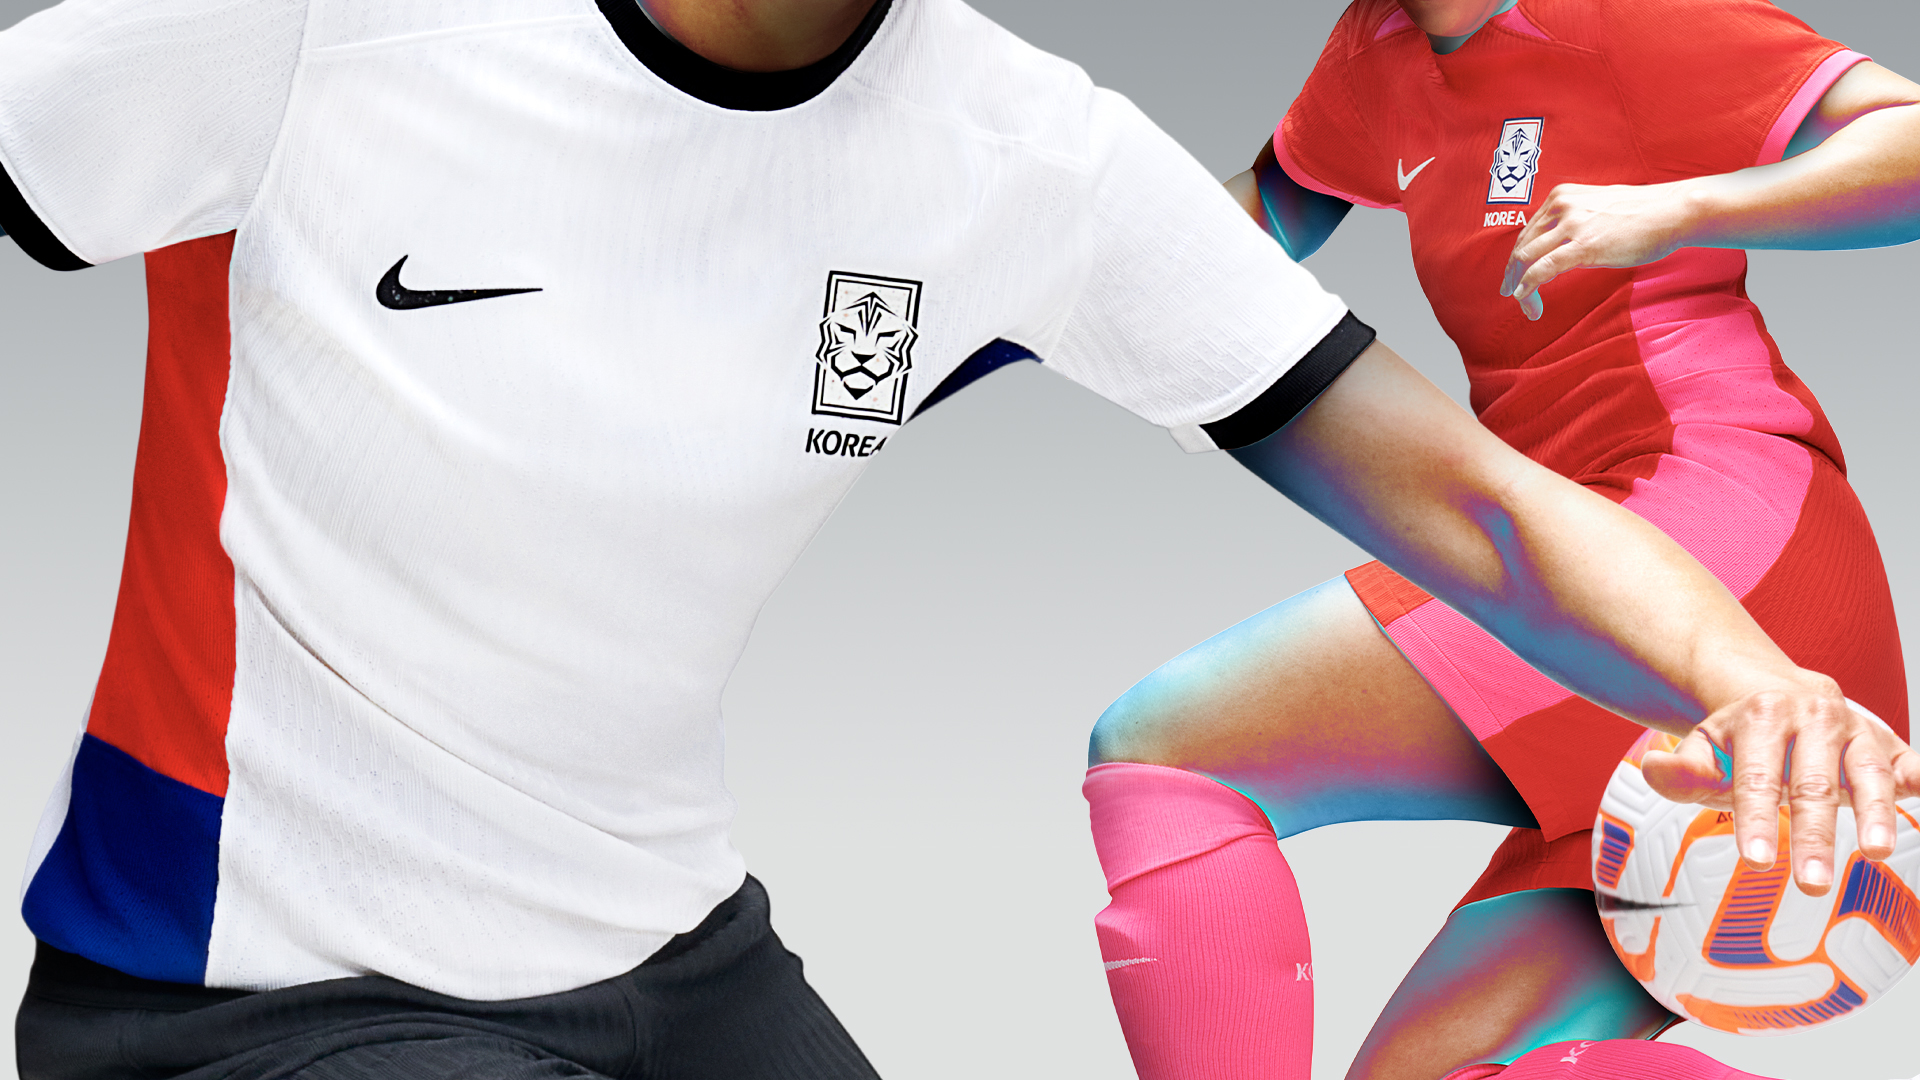 El ránking definitivo de las nuevas camisetas de los grandes del fútbol,  ¿cuál es la más bonita?